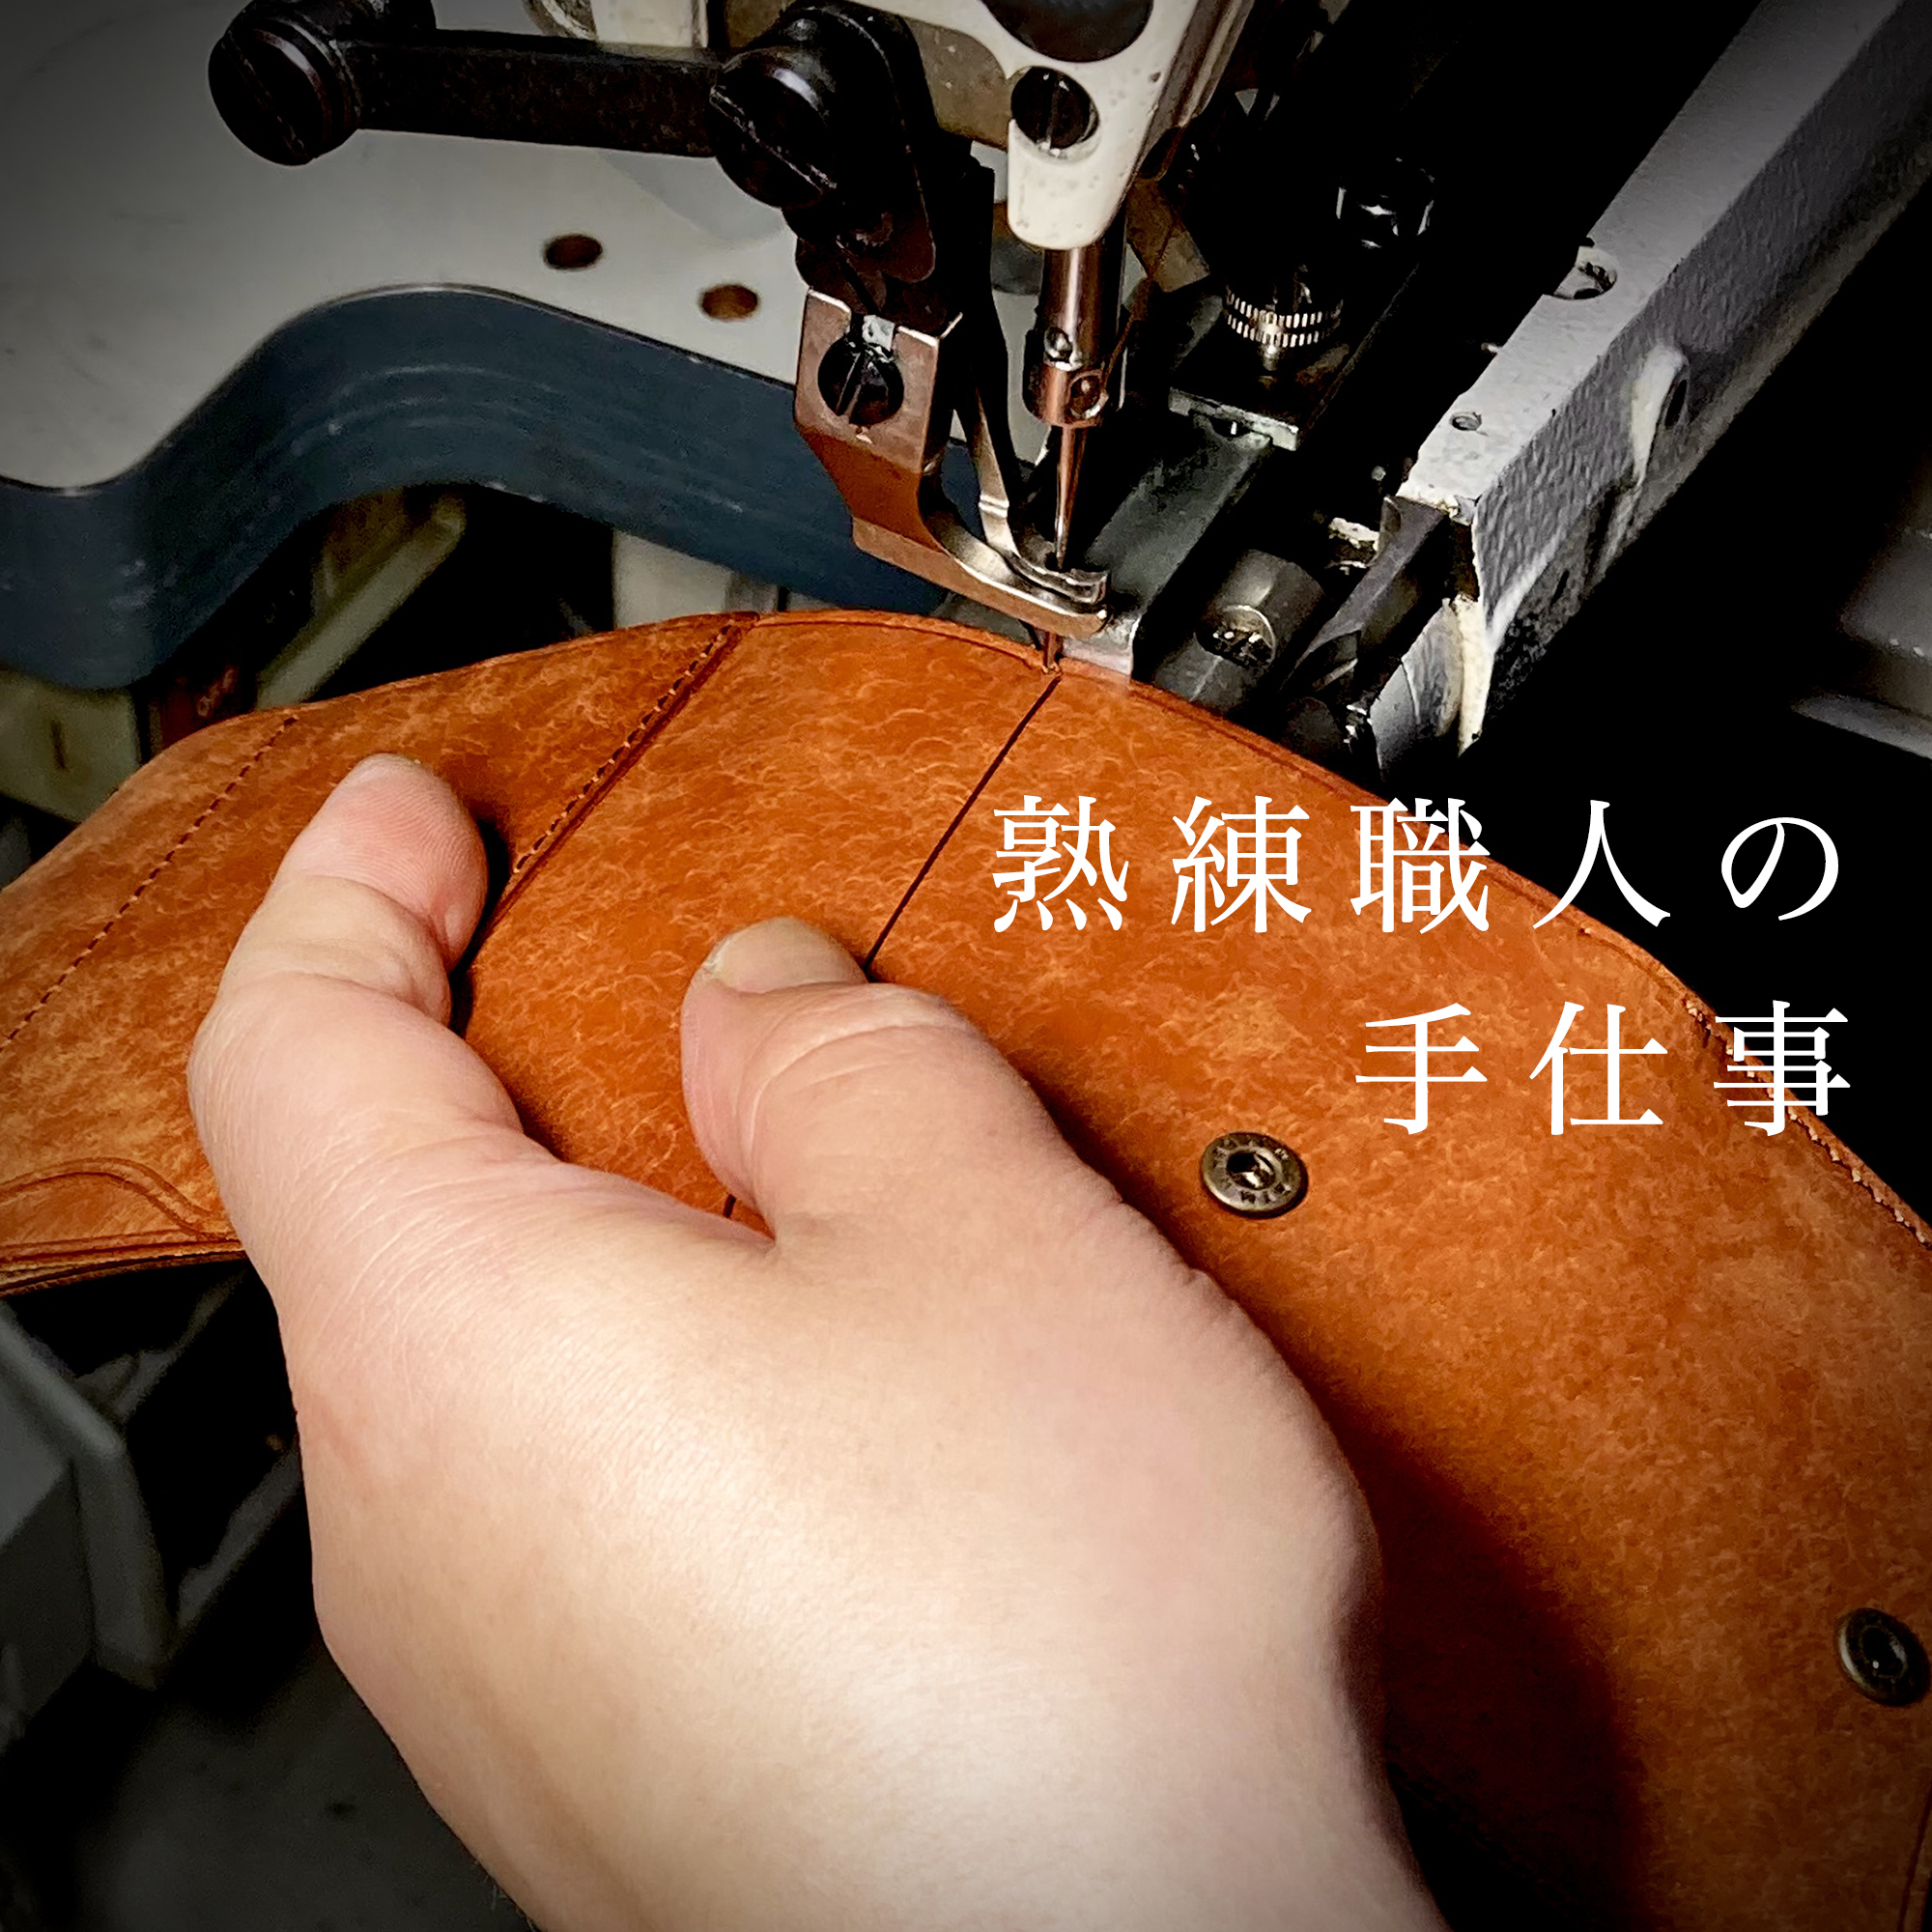 Handmade In Japan 熟練職人の手仕事